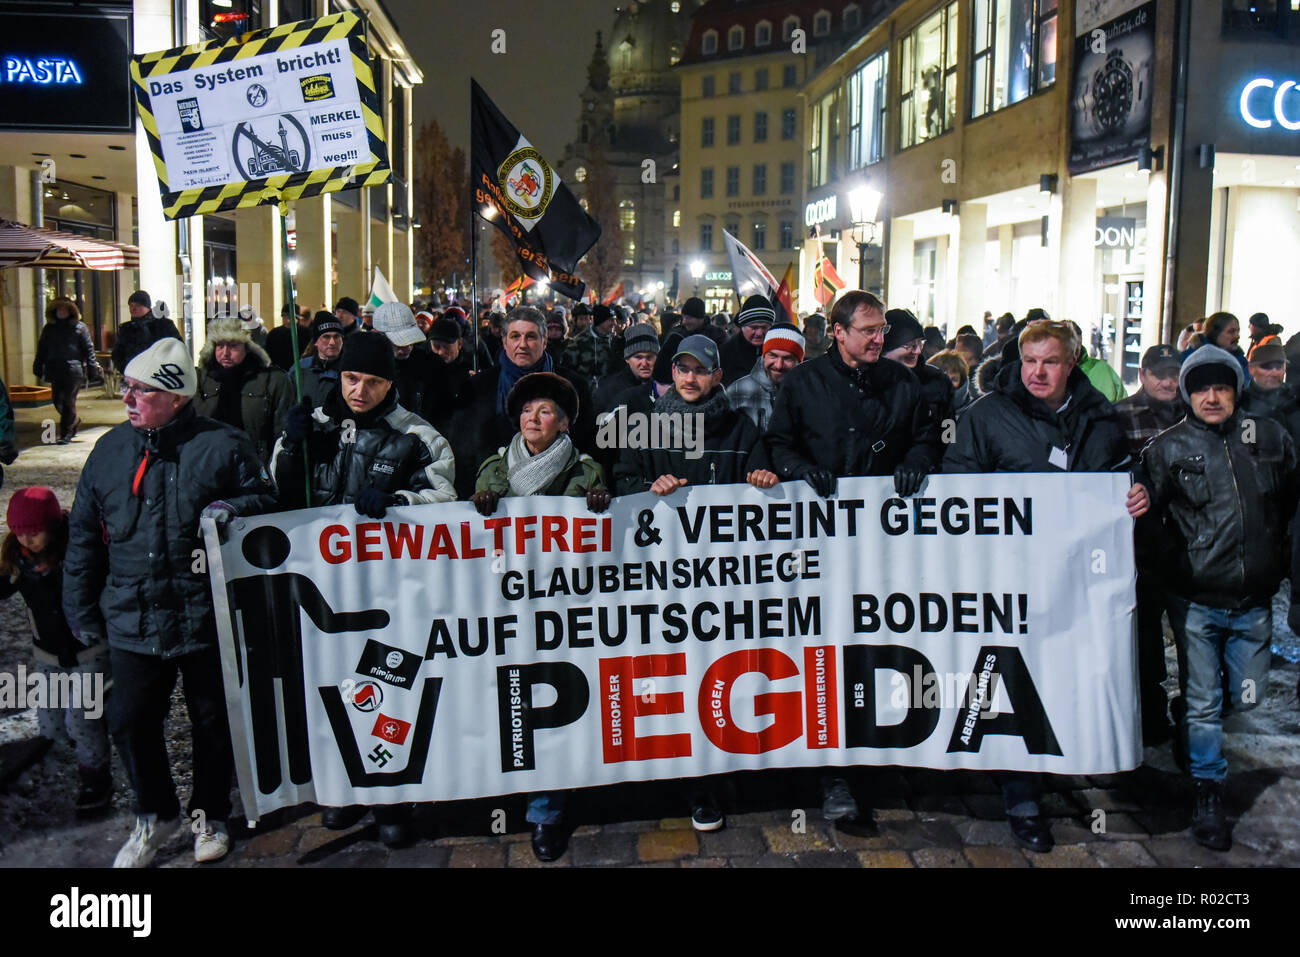 Anhänger der Pegida werden gesehen, halten ein Banner während des Protestes. Die Pegida (Patriotische Europäer gegen die Islamisierung des Westens) wöchentlichen Protest am Neumarkt. Stockfoto